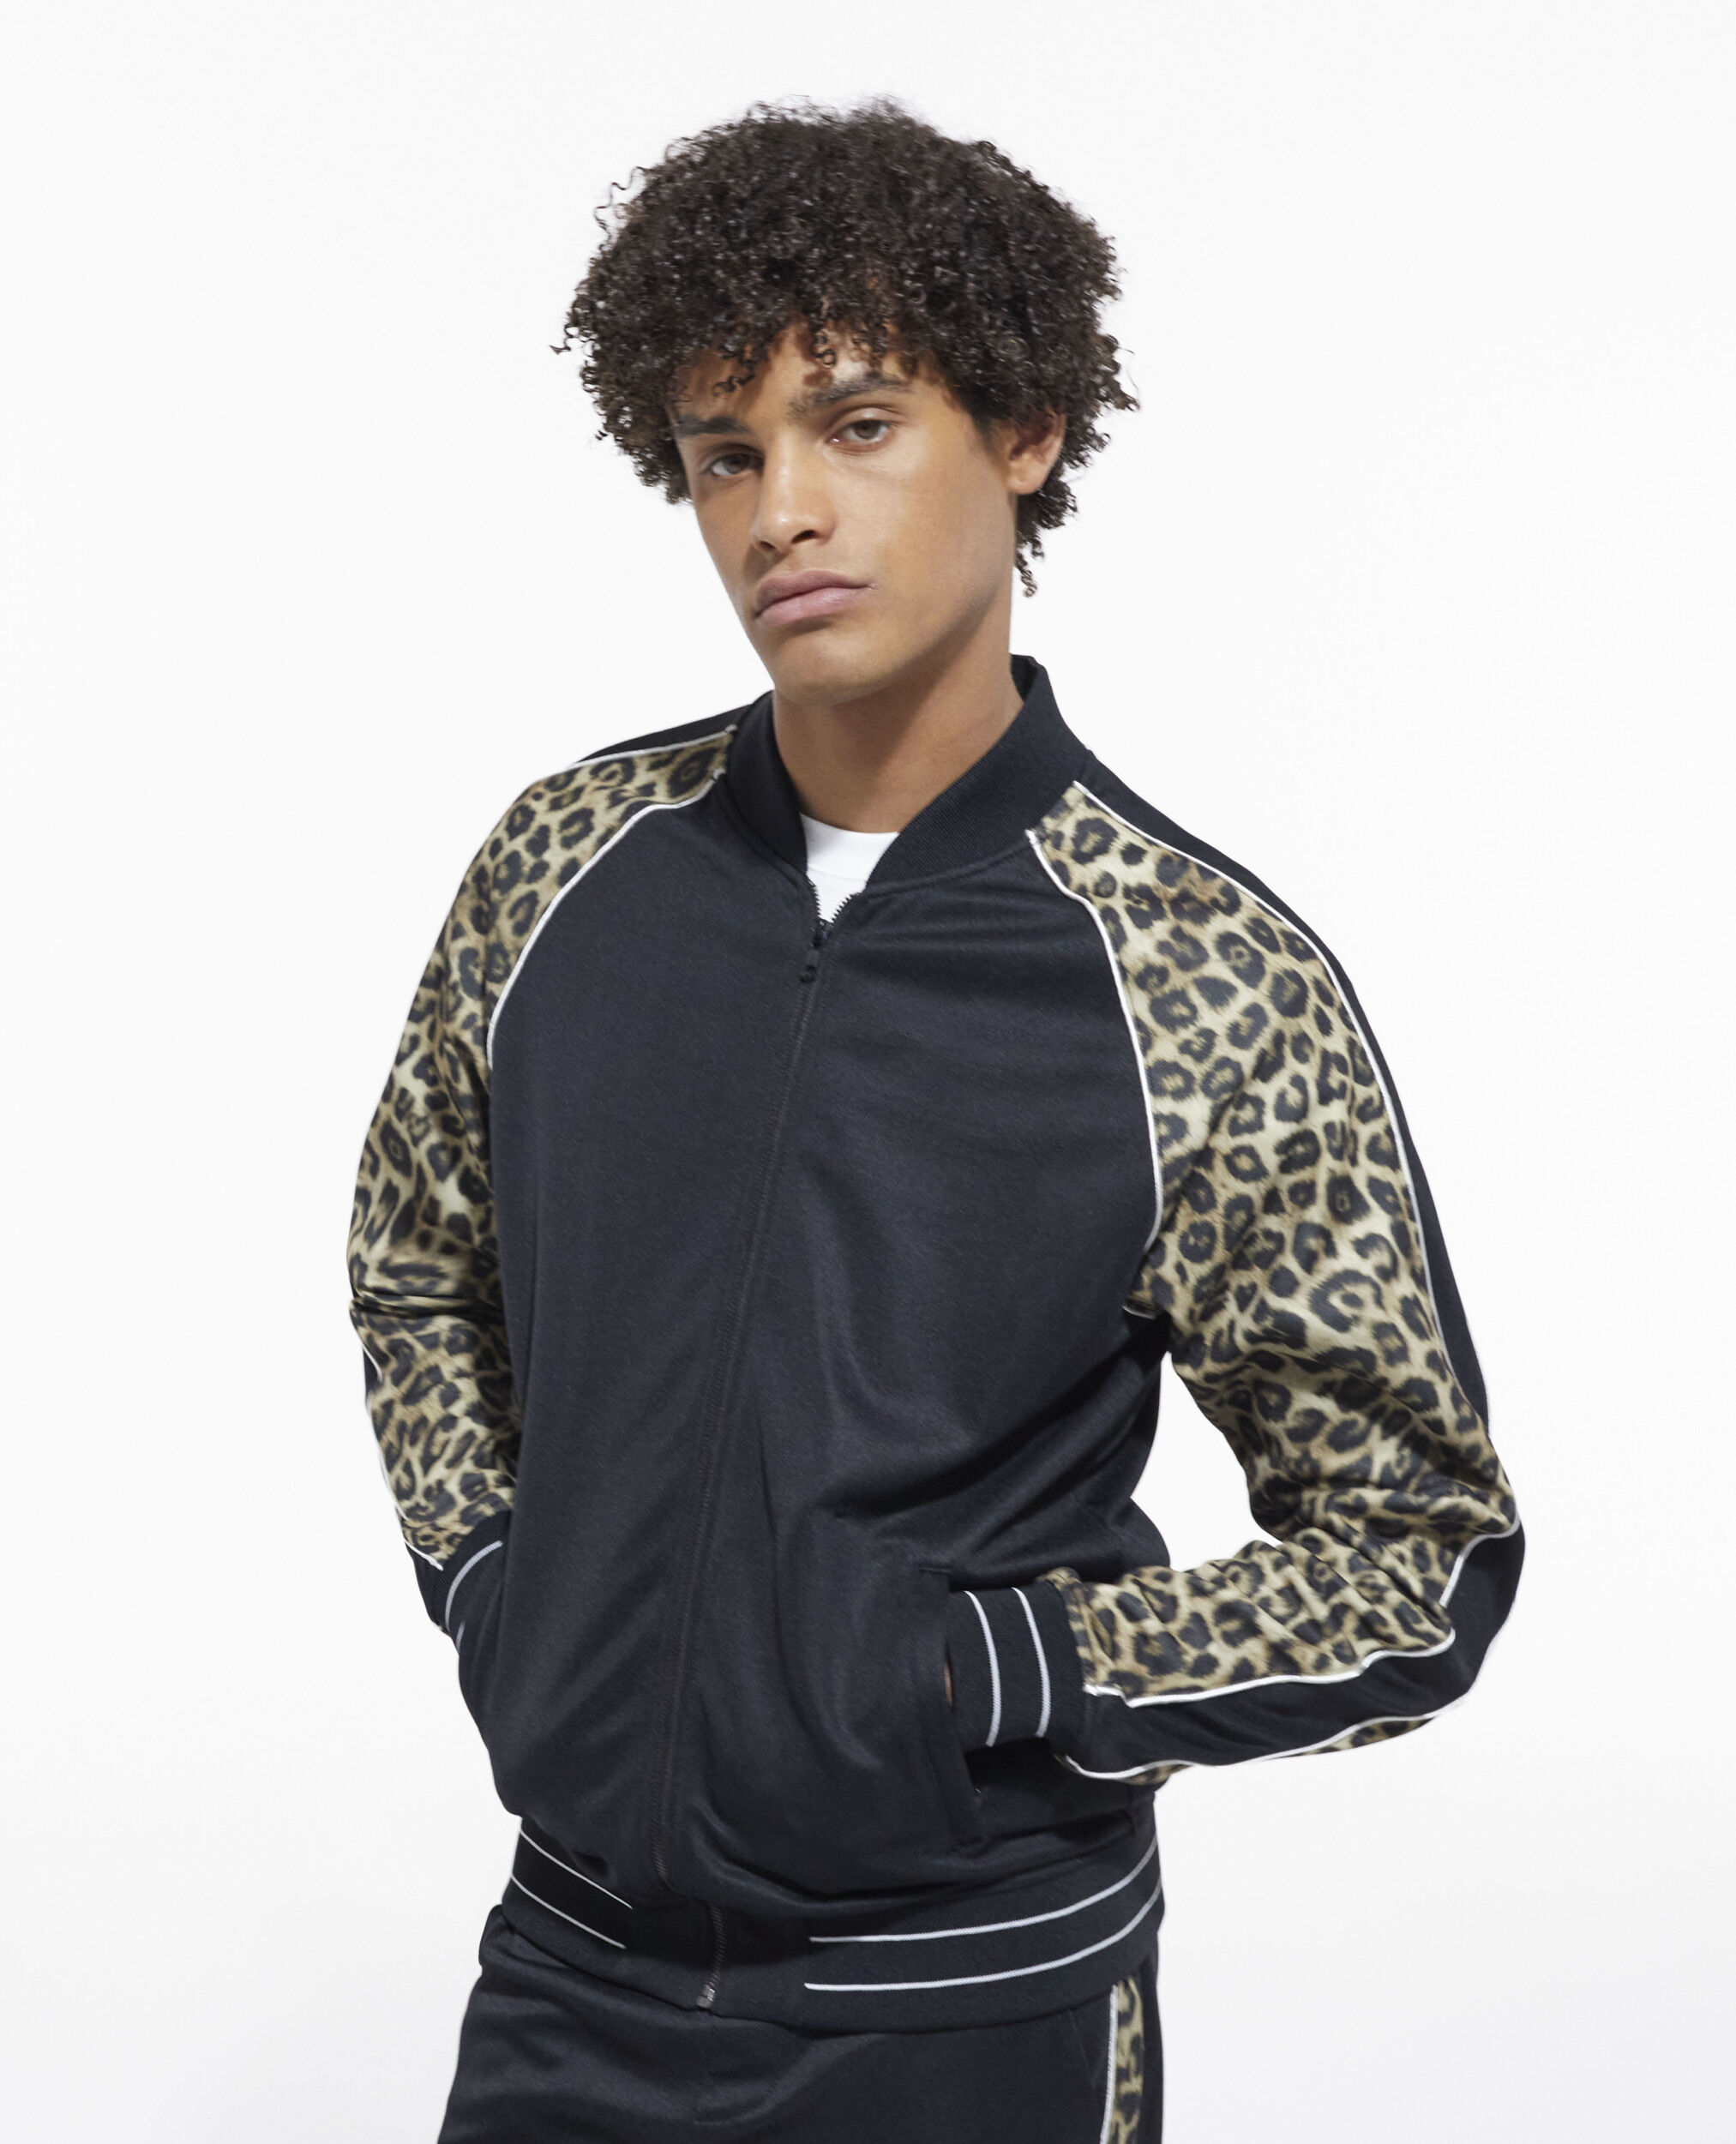 Sweatshirt zippé léopard, BLACK / LEOPARD, hi-res image number null